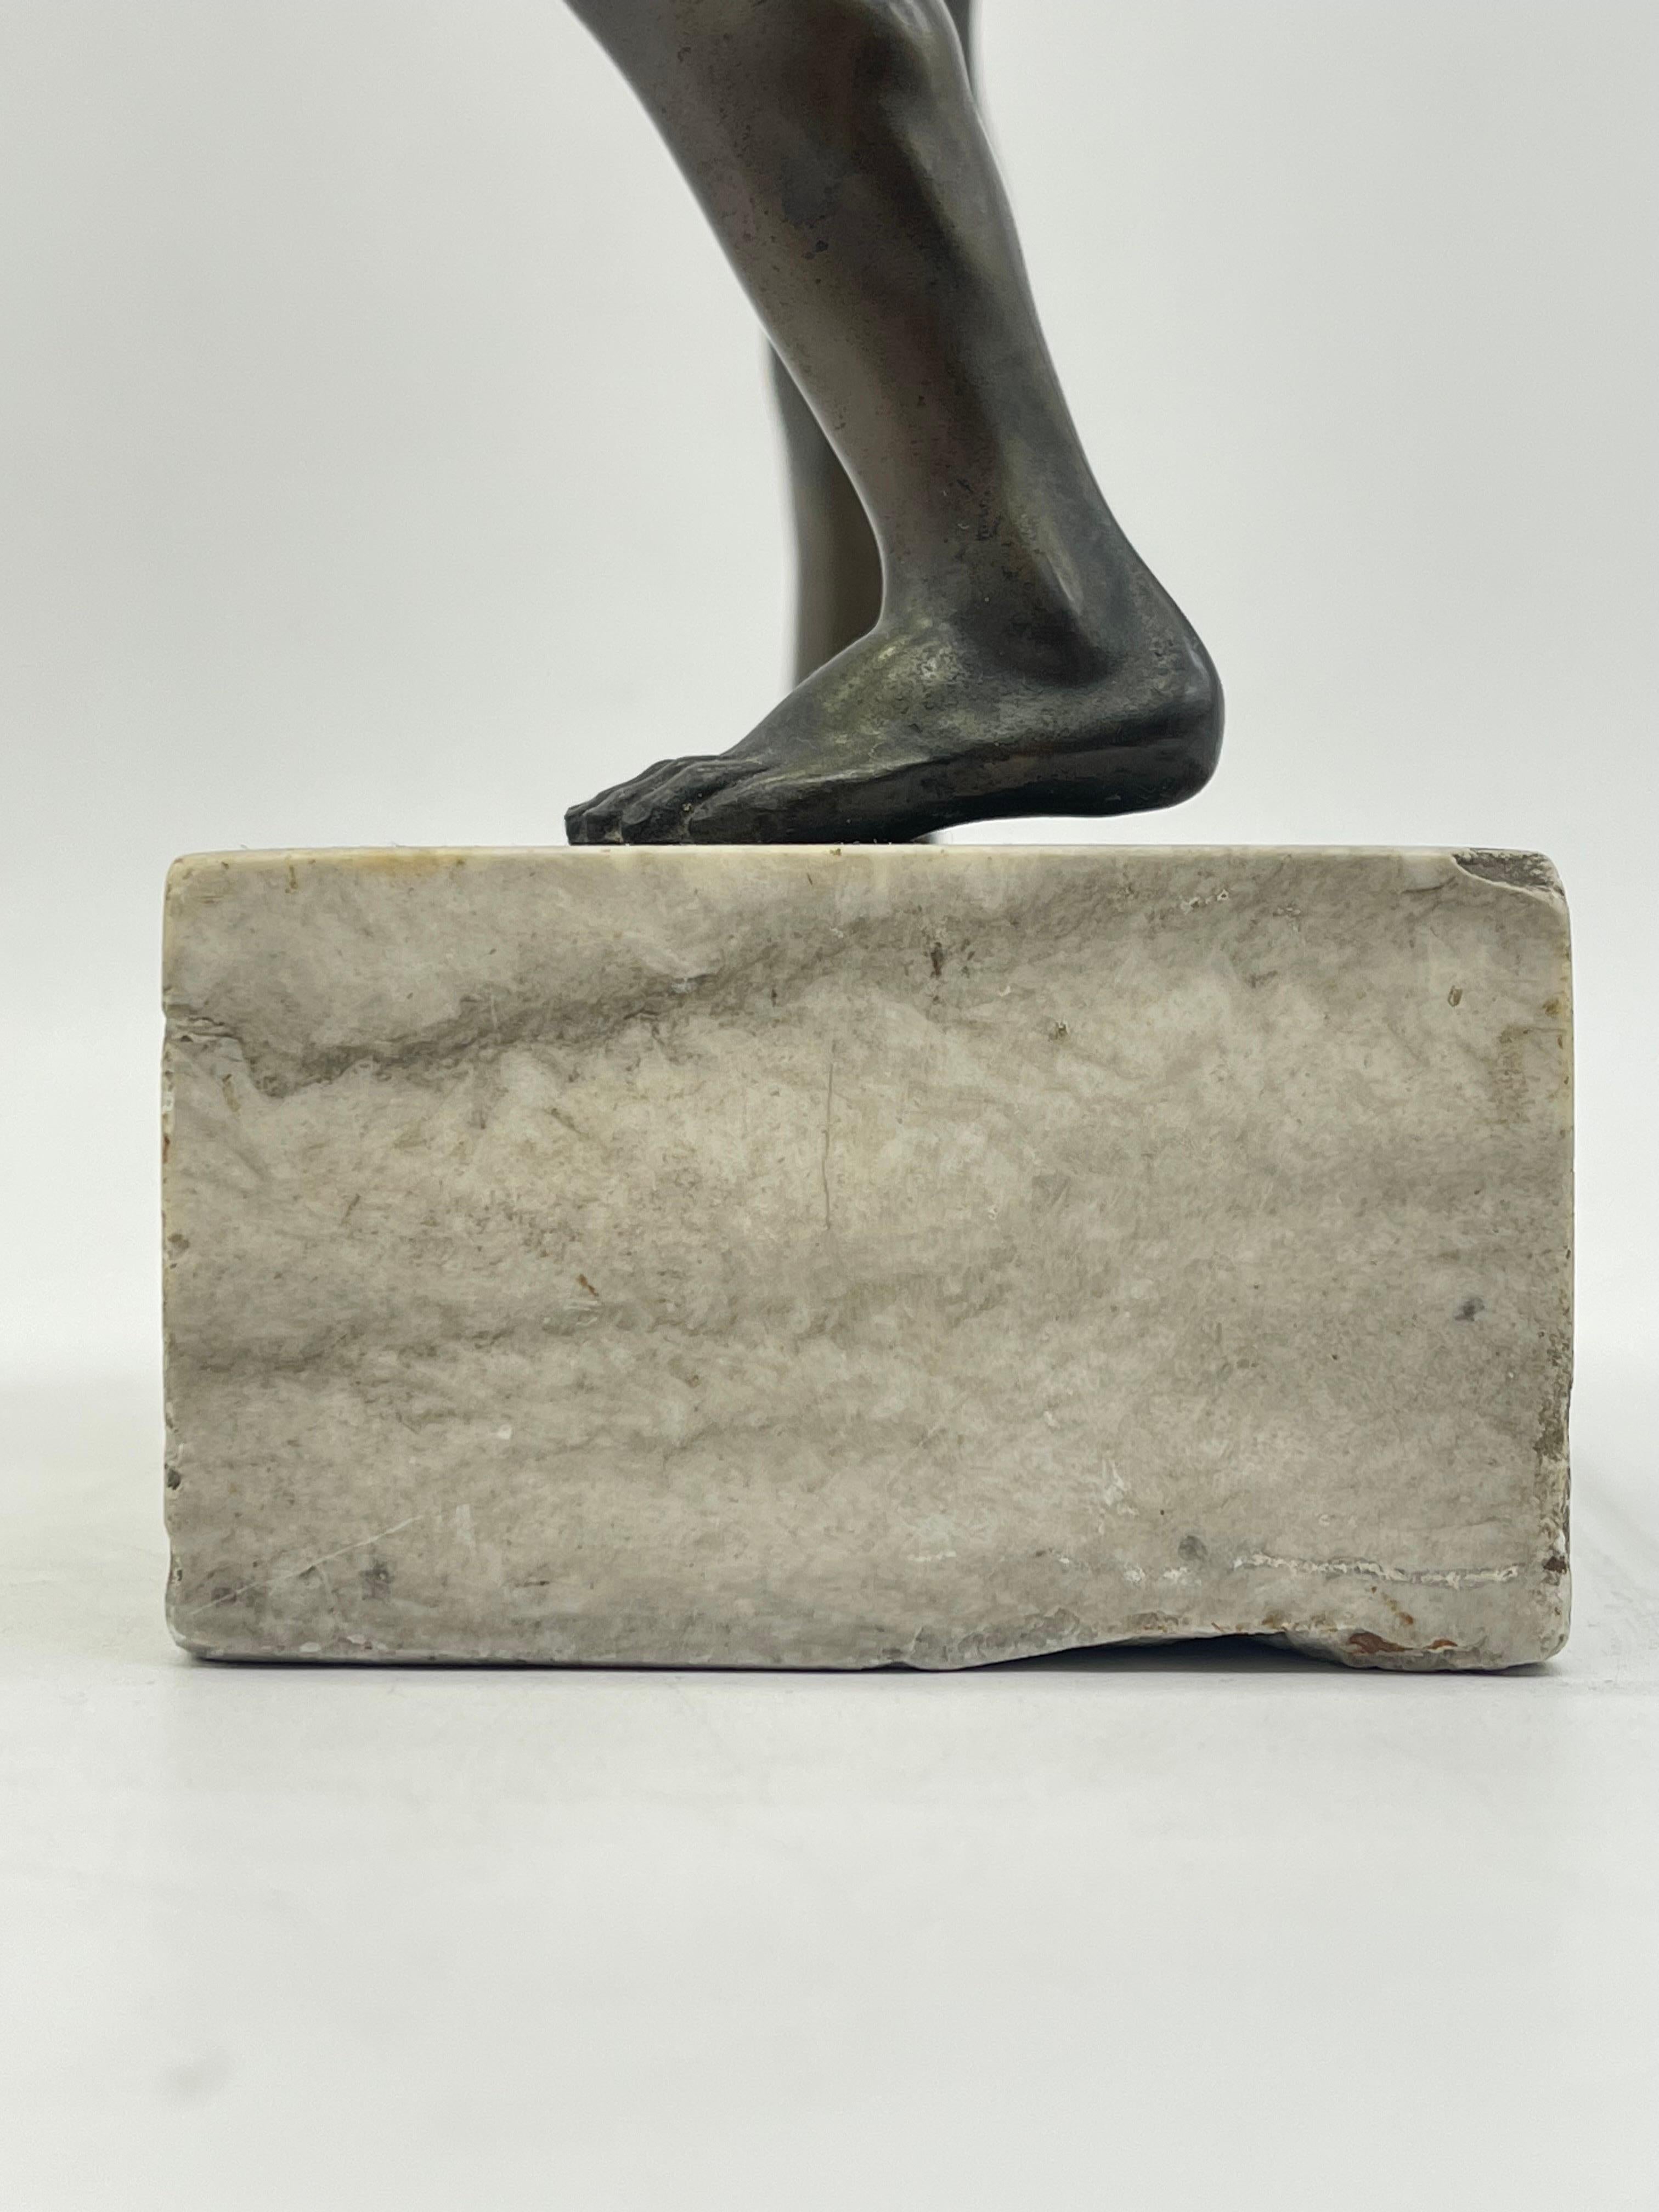 Athletic Bronze-Krieger-Skulptur eines Kriegers auf Marmorsockels, griechische Figur mit Schild im Angebot 9